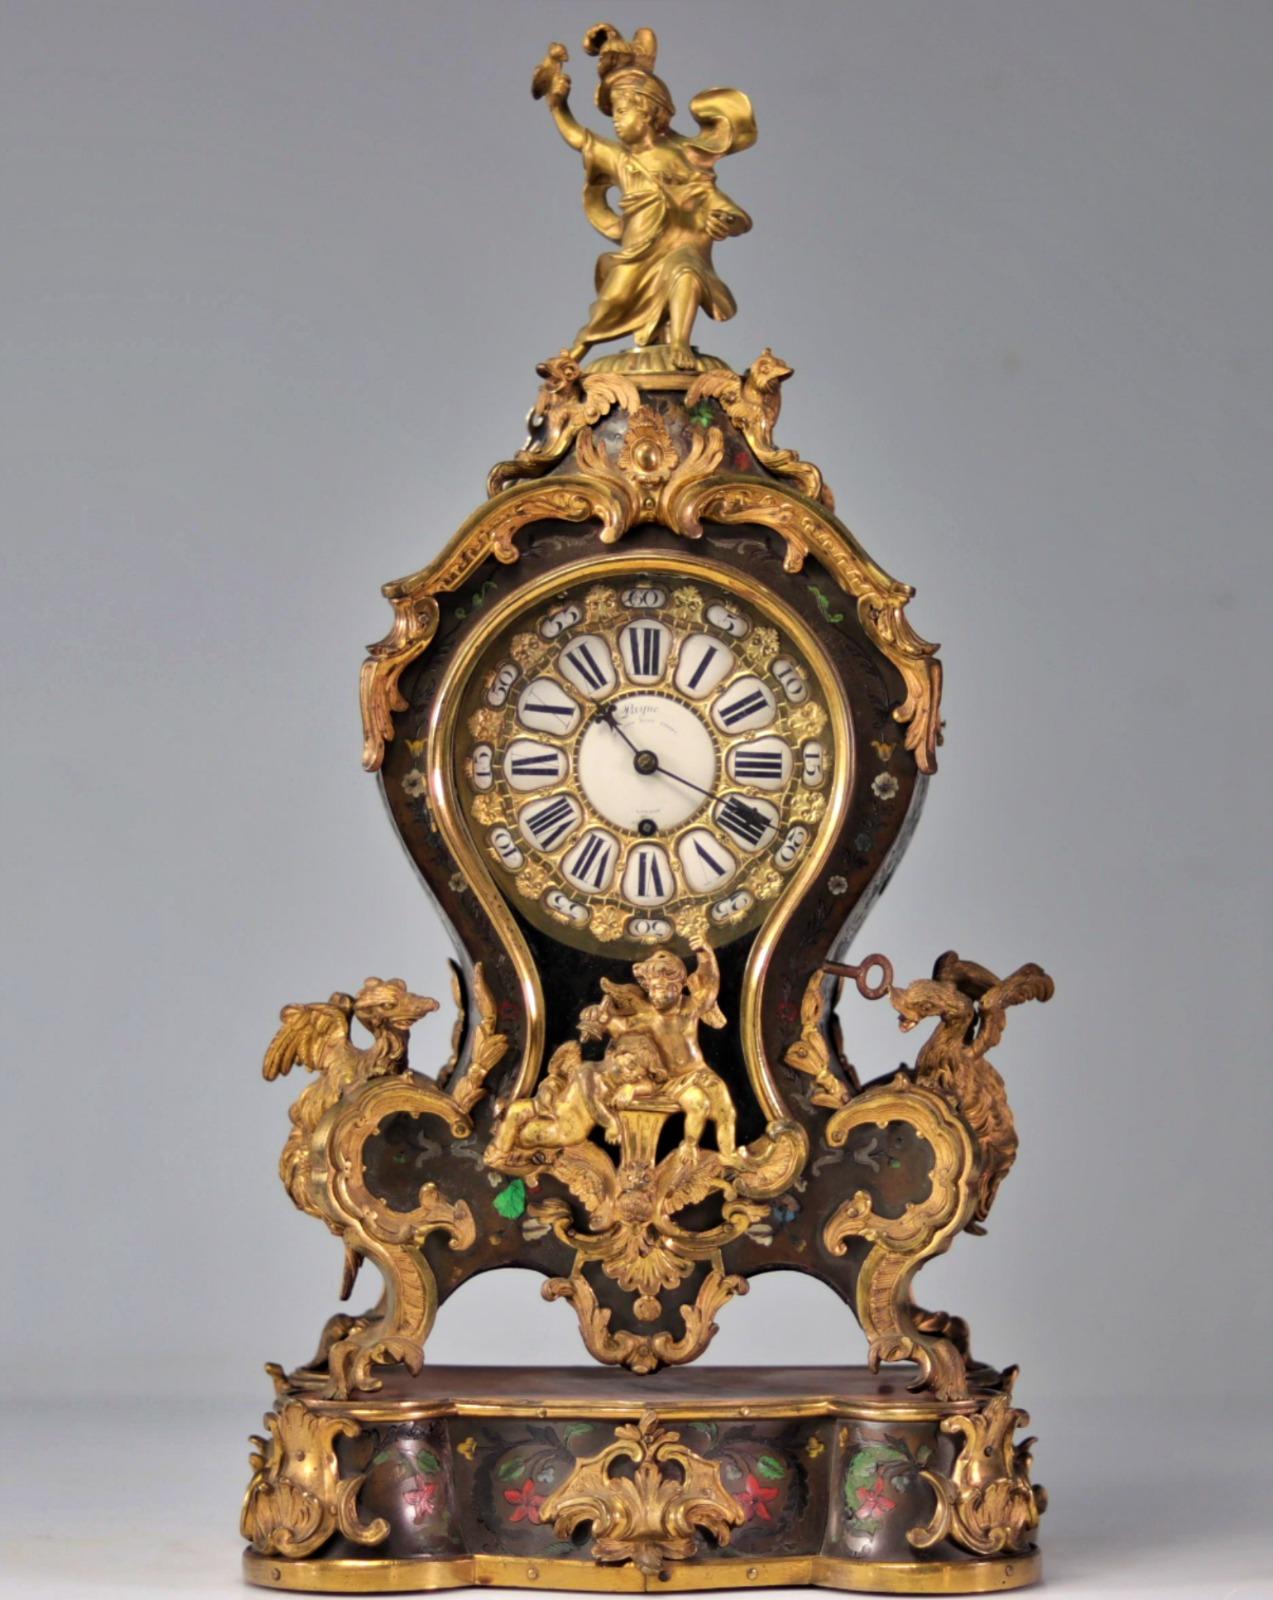 Rare horloge anglaise du 18e siècle 
Marqueterie
Poids : 9,20 kg 
Angleterre 
Dimensions : H 62cm L 31cm 

Très bon état.